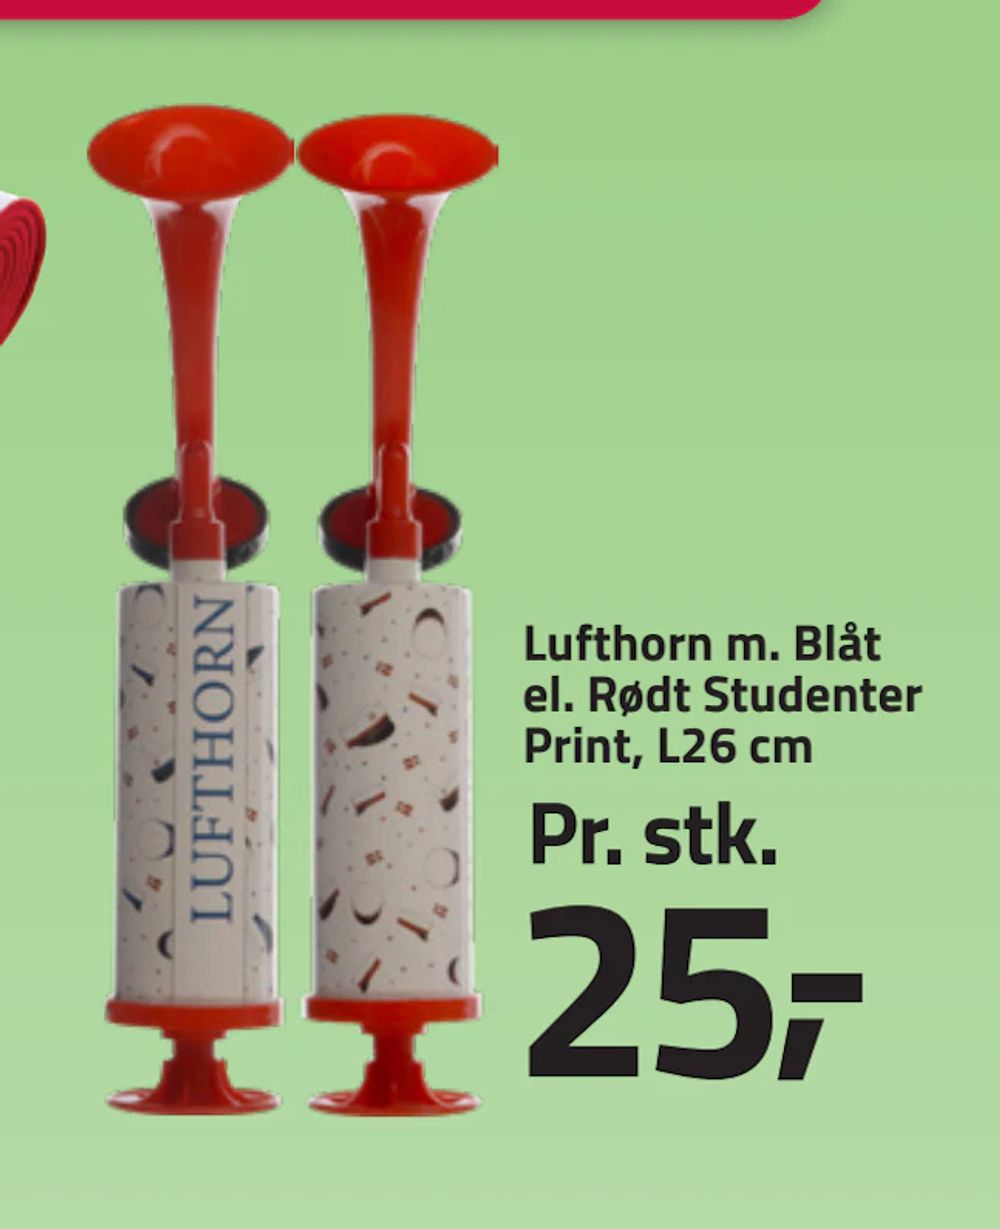 Tilbud på Lufthorn m. Blåt el. Rødt Studenter Print, L26 cm fra Fleggaard til 25 kr.